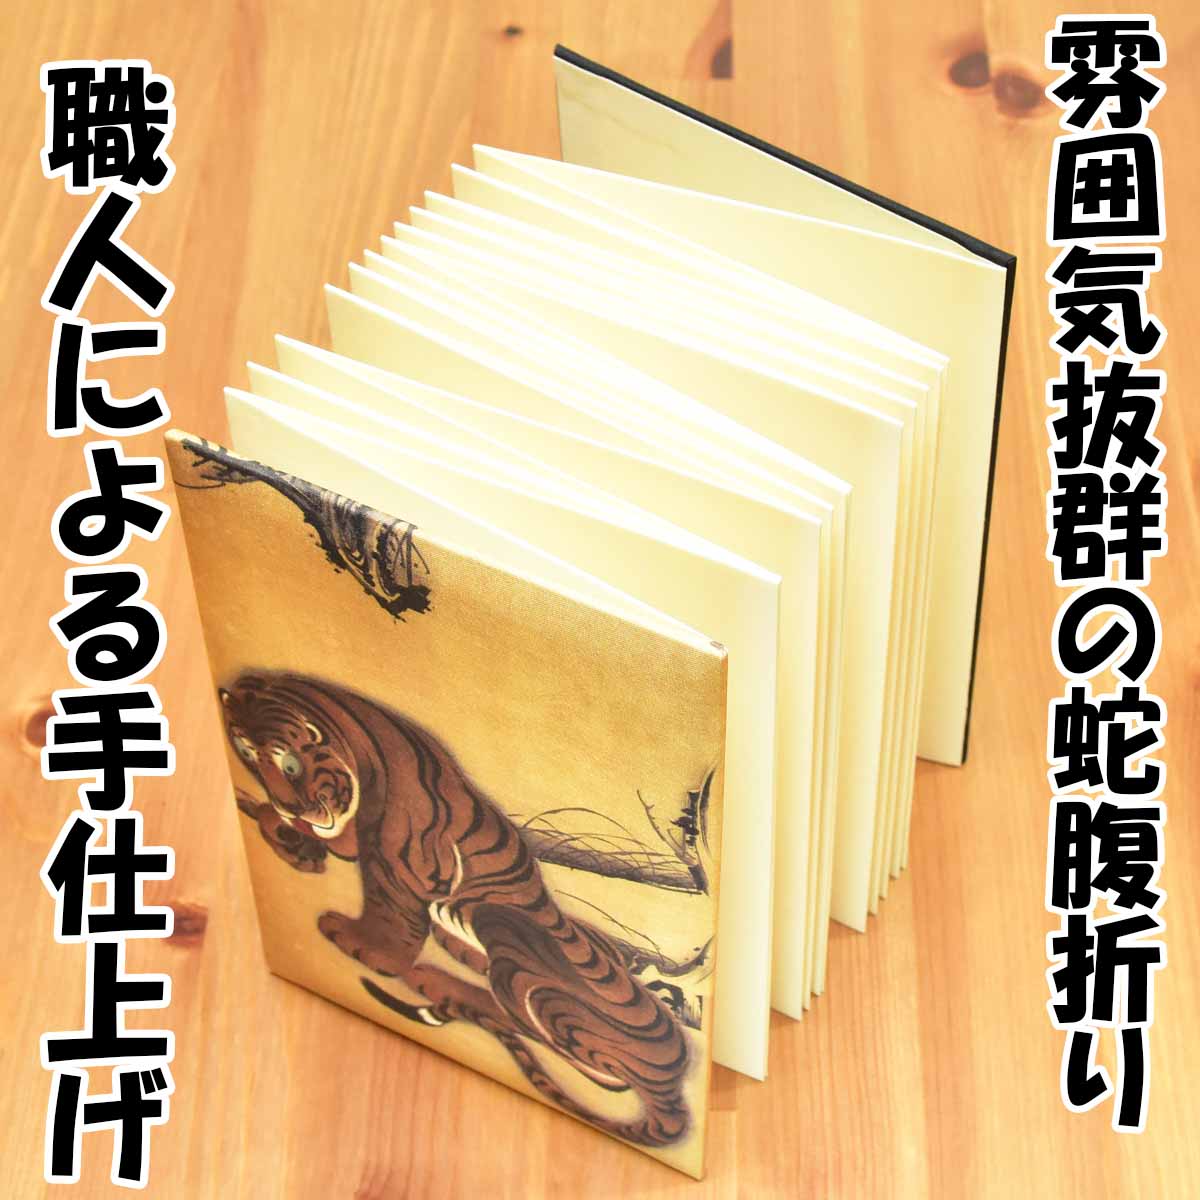 伊藤若冲の「猛虎図」を表紙にダイナミックに描いた御朱印帳